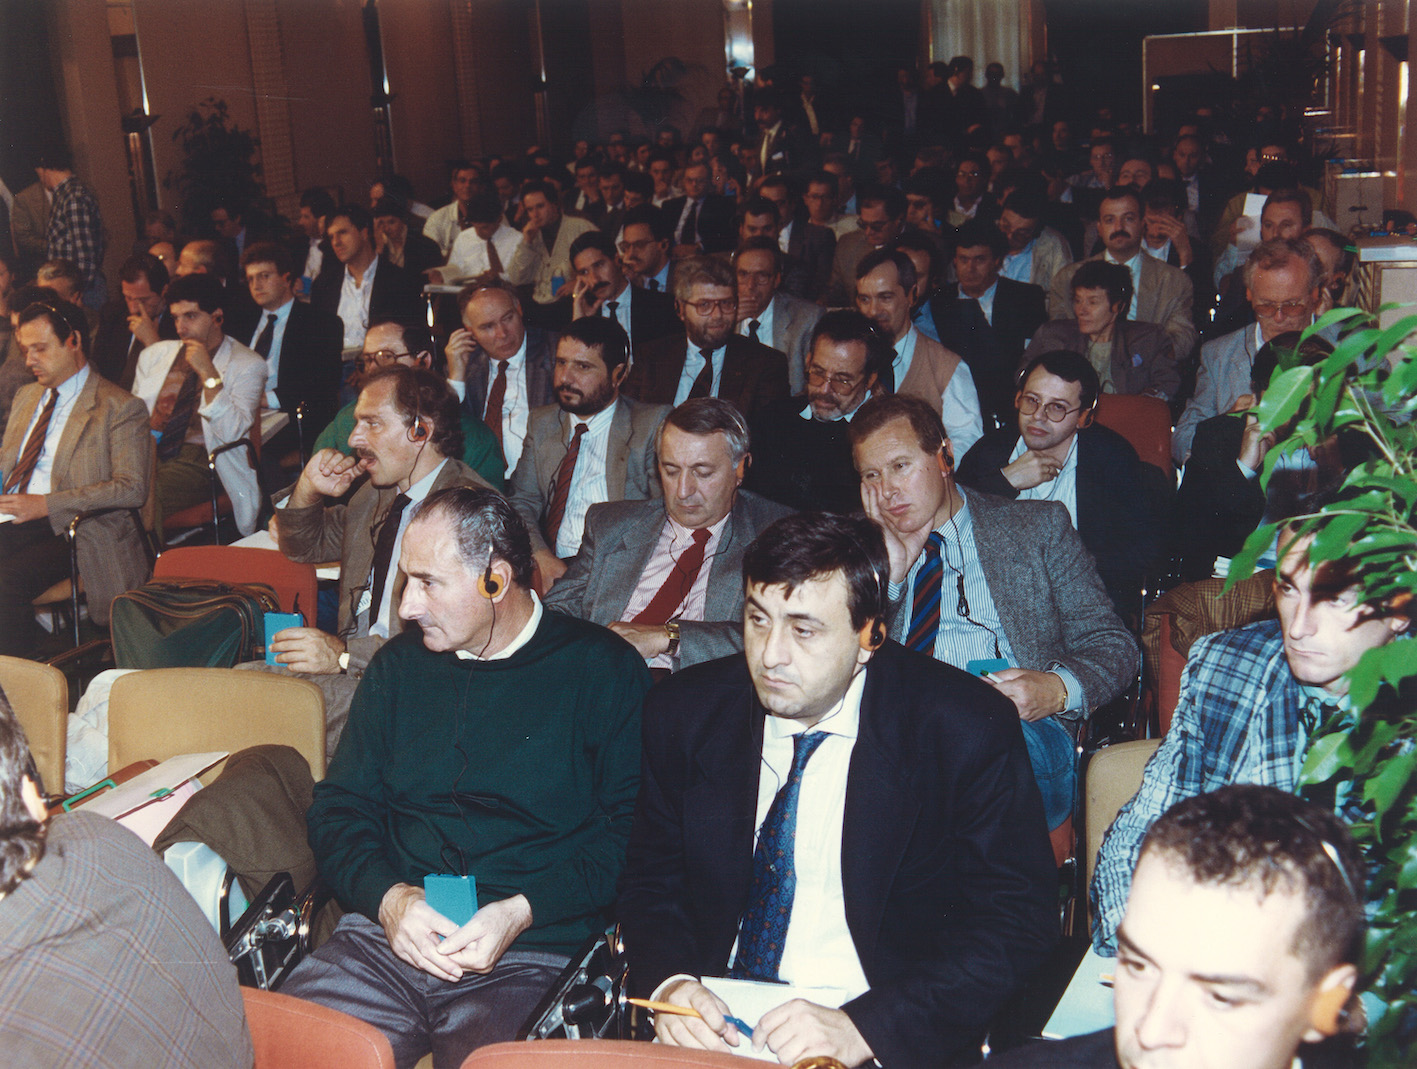 18 ottobre 1990 Roma Convegno nazionale Filca “Democrazia economica e partecipazione. Prime riflessioni su un progetto possibile” - Archivio fotografico Filca-Cisl nazionale_